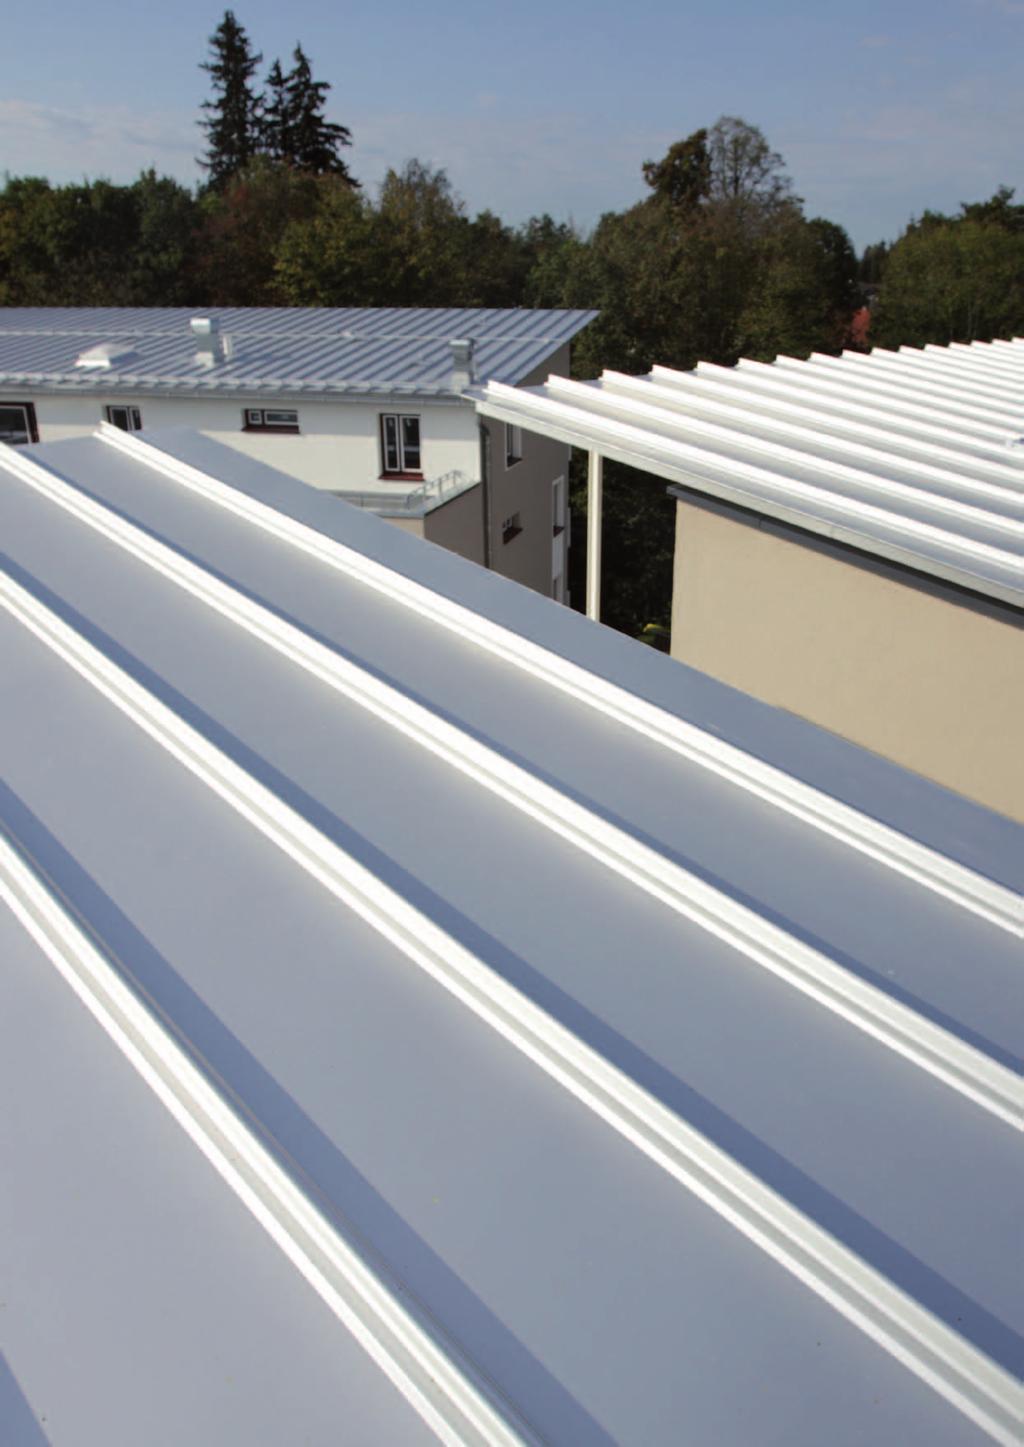 Kalzip Aluminium-Dachsystem für Wohnquartiere Nachhaltigkeit und Wirtschaftlichkeit im Wohnungsbau das heißt vor allem auf Energie-Effizienz, Langlebigkeit, Sicherheit und Wartungsfreiheit zu setzen!